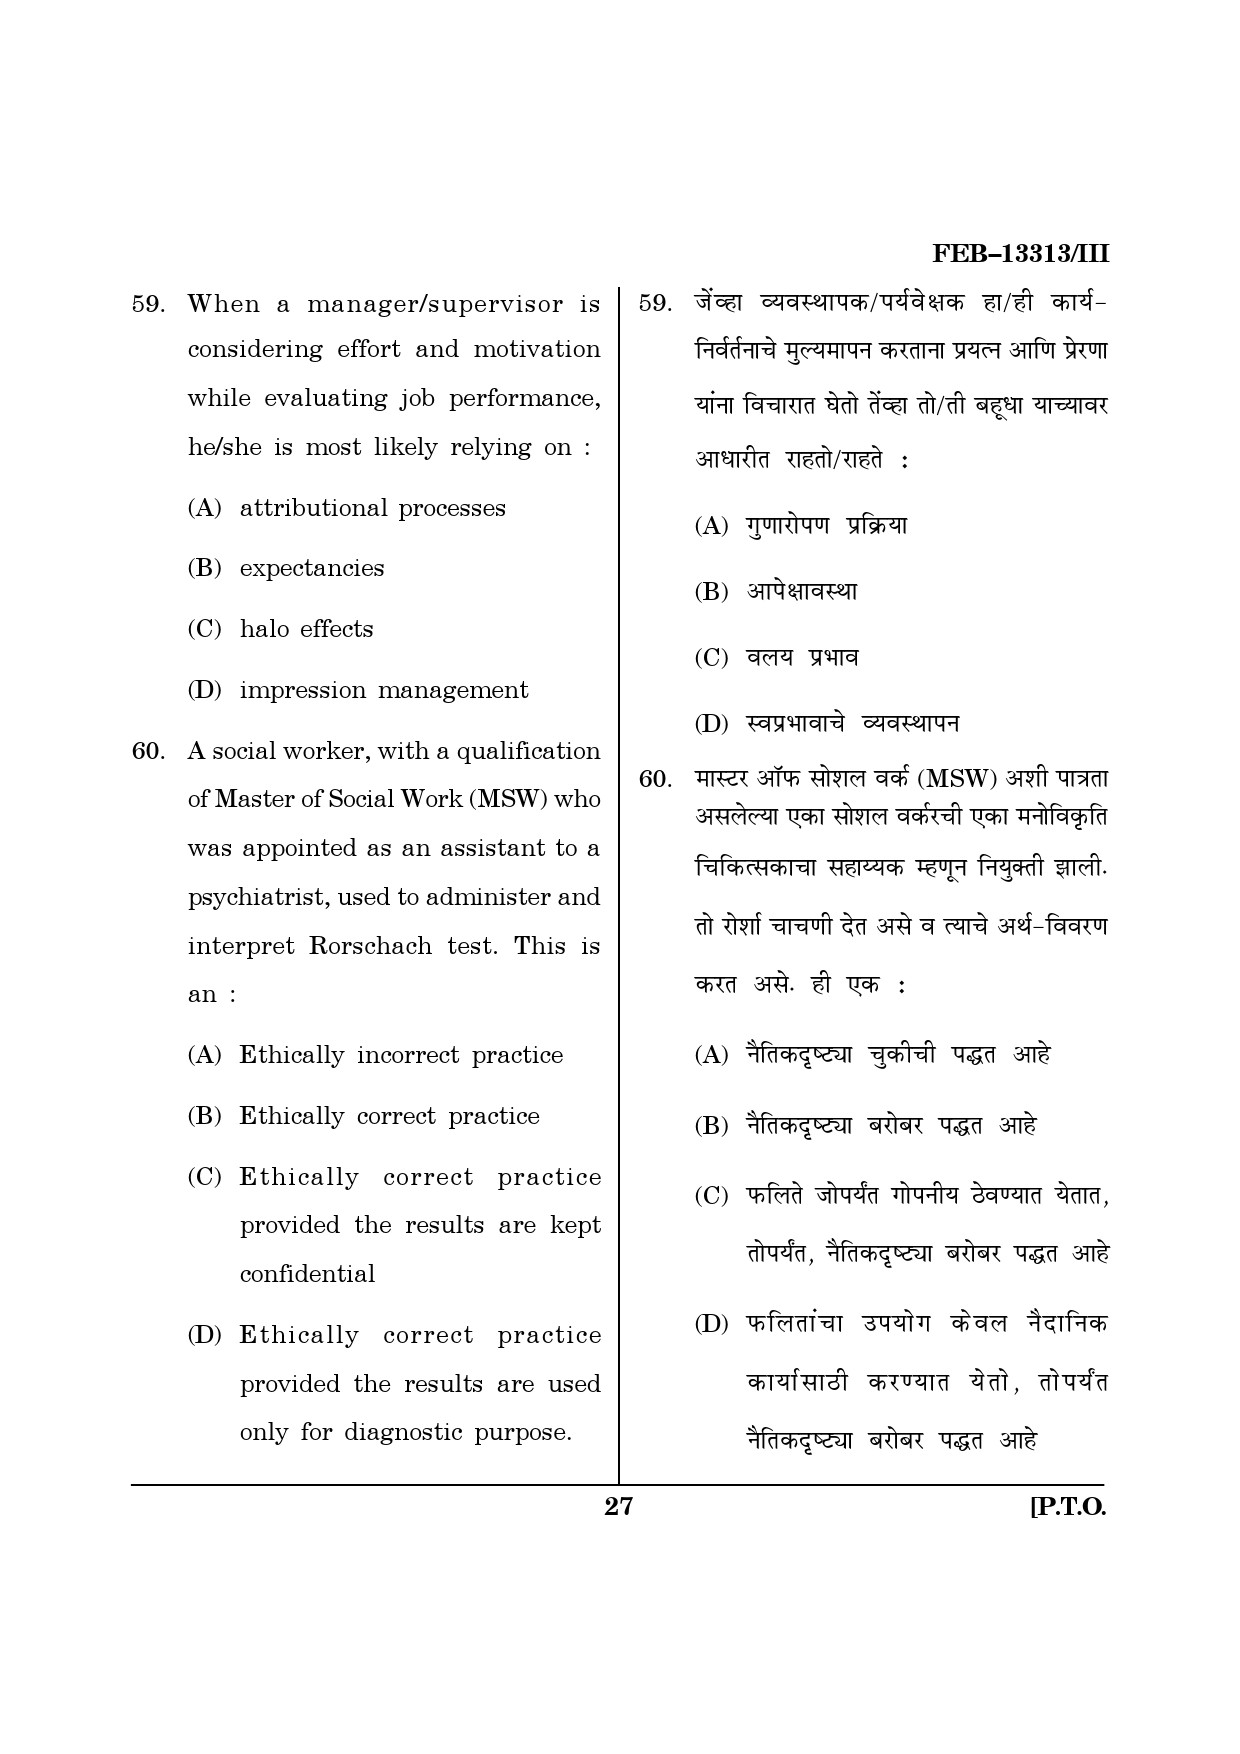 Maharashtra SET Psychology Question Paper III February 2013 27